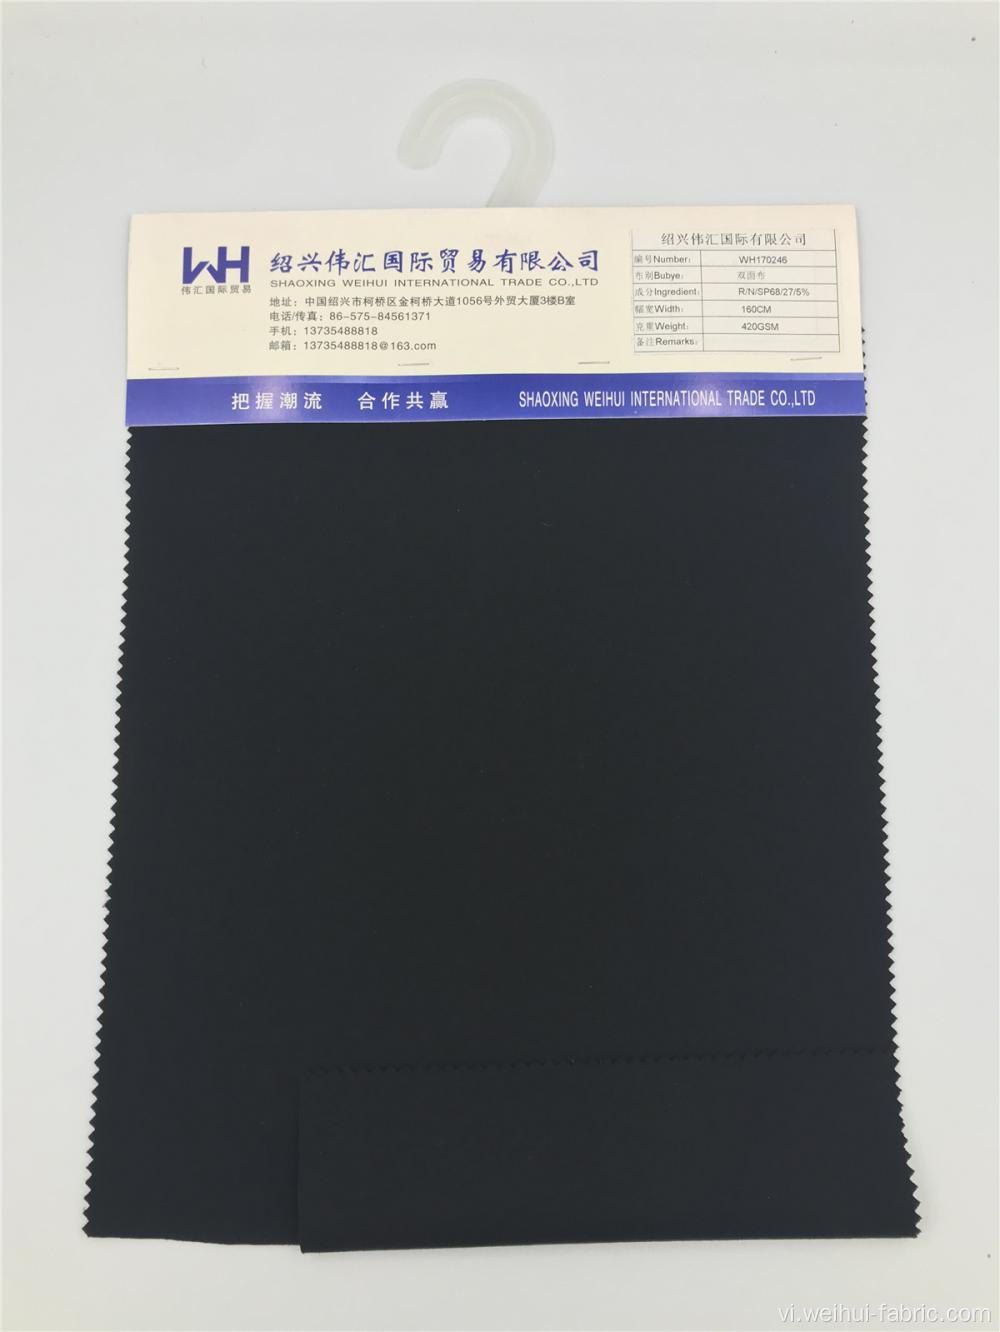 Vải dệt kim hai mặt màu đen trơn R / N / SP chất lượng cao